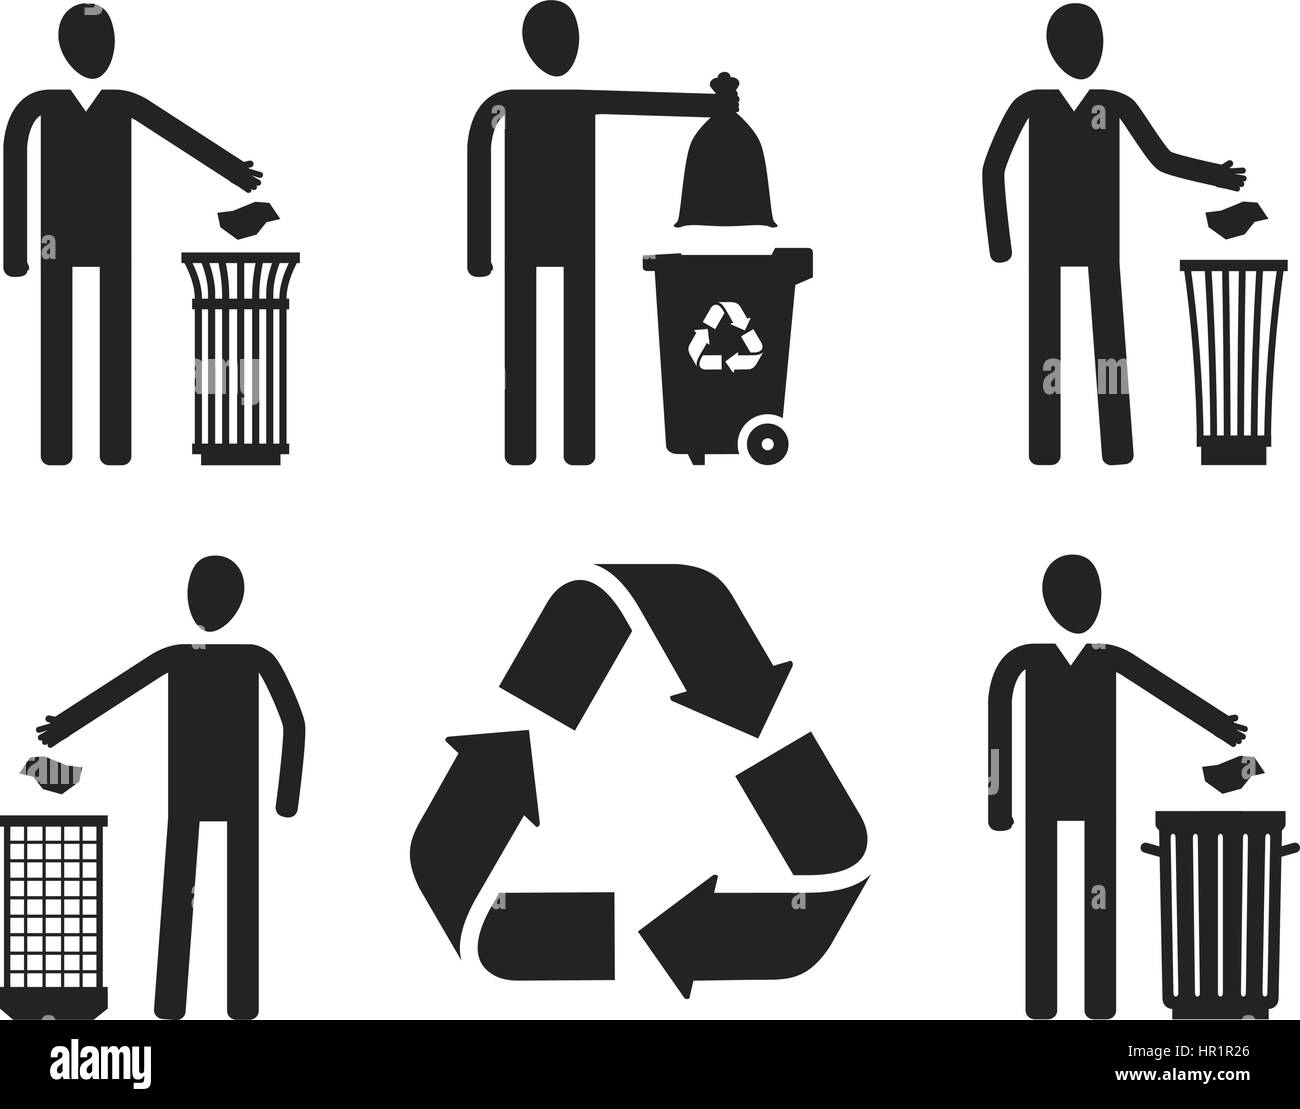 Poubelle ou bin avec figure humaine. Le recyclage, ne pas jeter ensemble  d'icônes ou symboles. Vector illustration Image Vectorielle Stock - Alamy